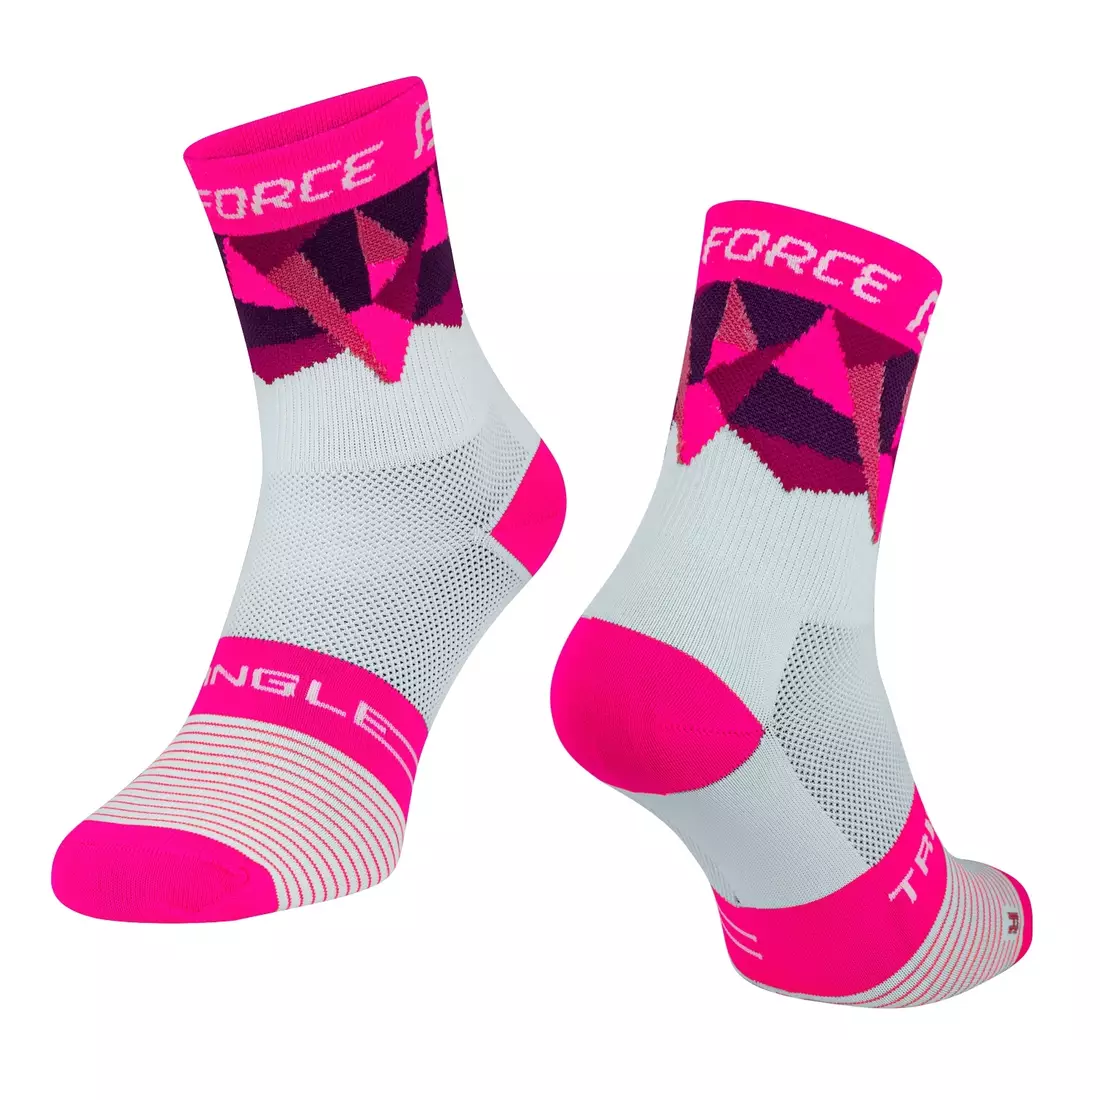 FORCE TRIANGLE cyklistické/sportovní ponožky, bílé a růžové